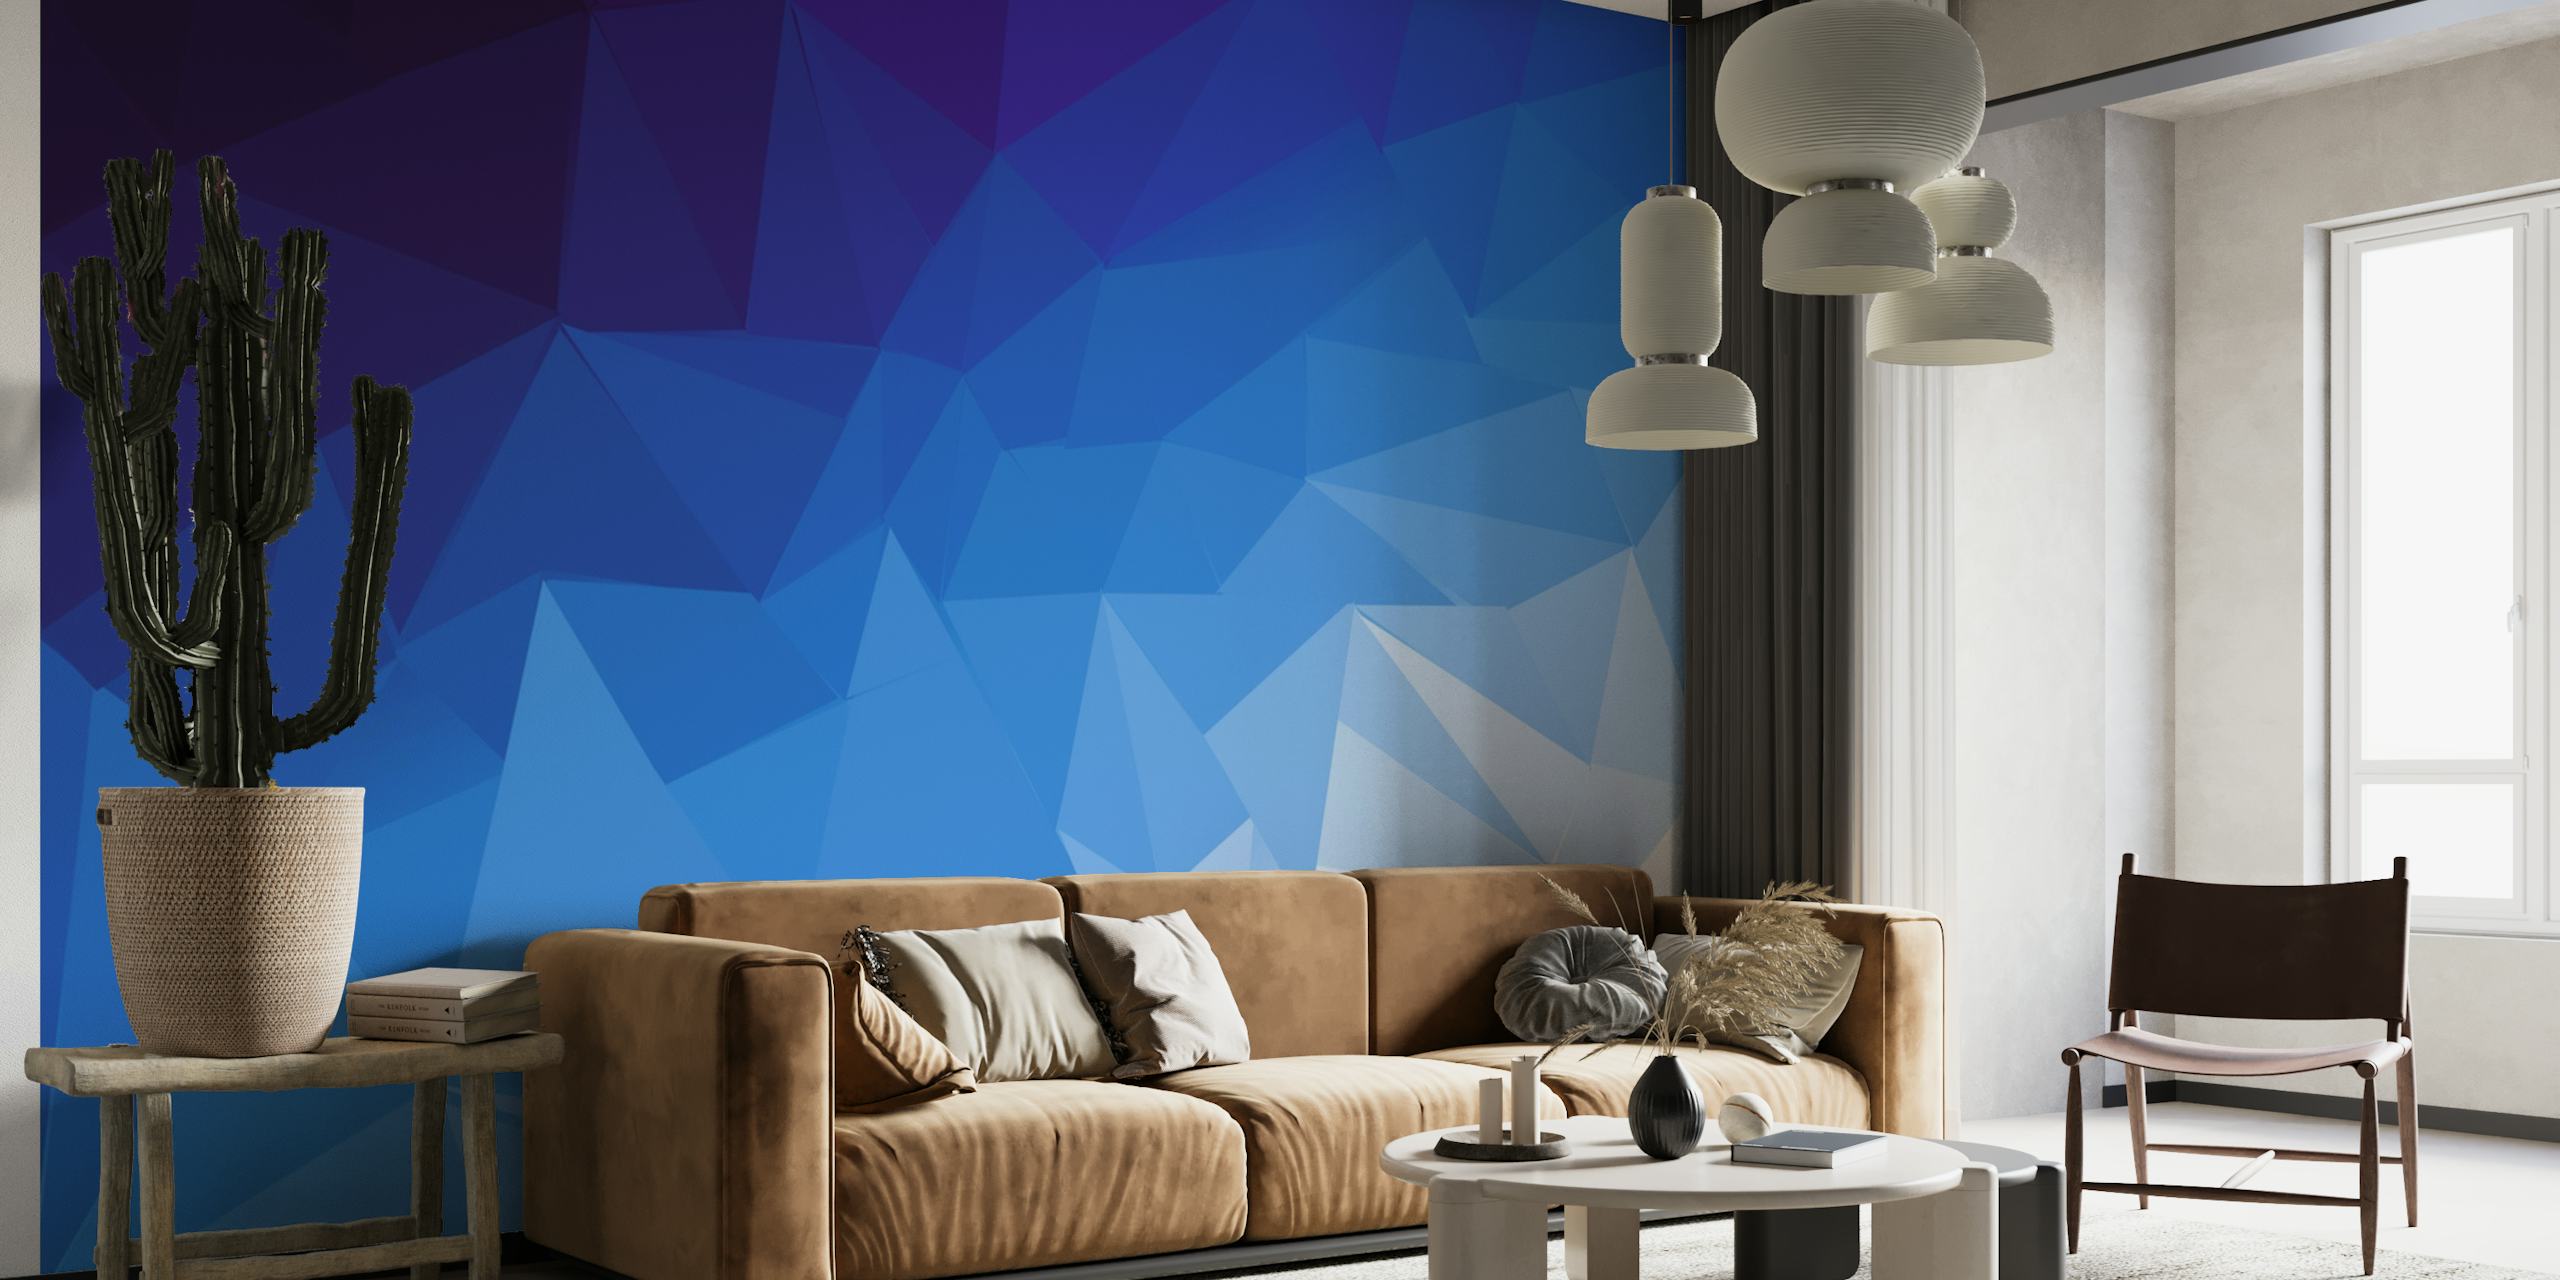 Apstraktni geometrijski zidni mural inspiriran oceanom u nijansama plave.